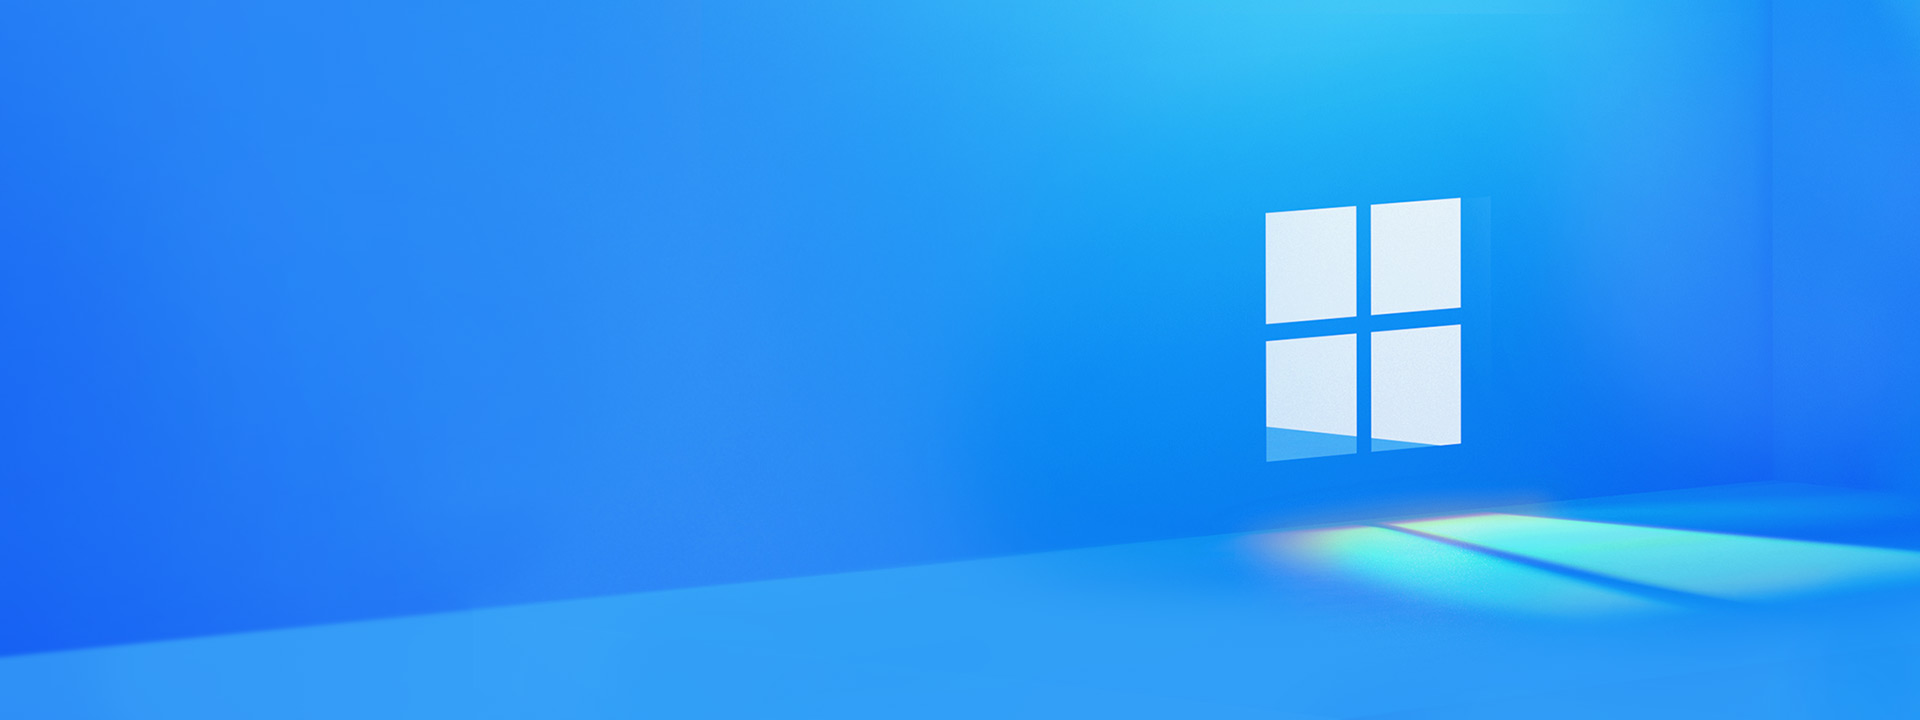 Chia sẻ bộ hình nền Windows 11 vừa ra mắt (4K Resolution) | Viết bởi  hongphuc1992